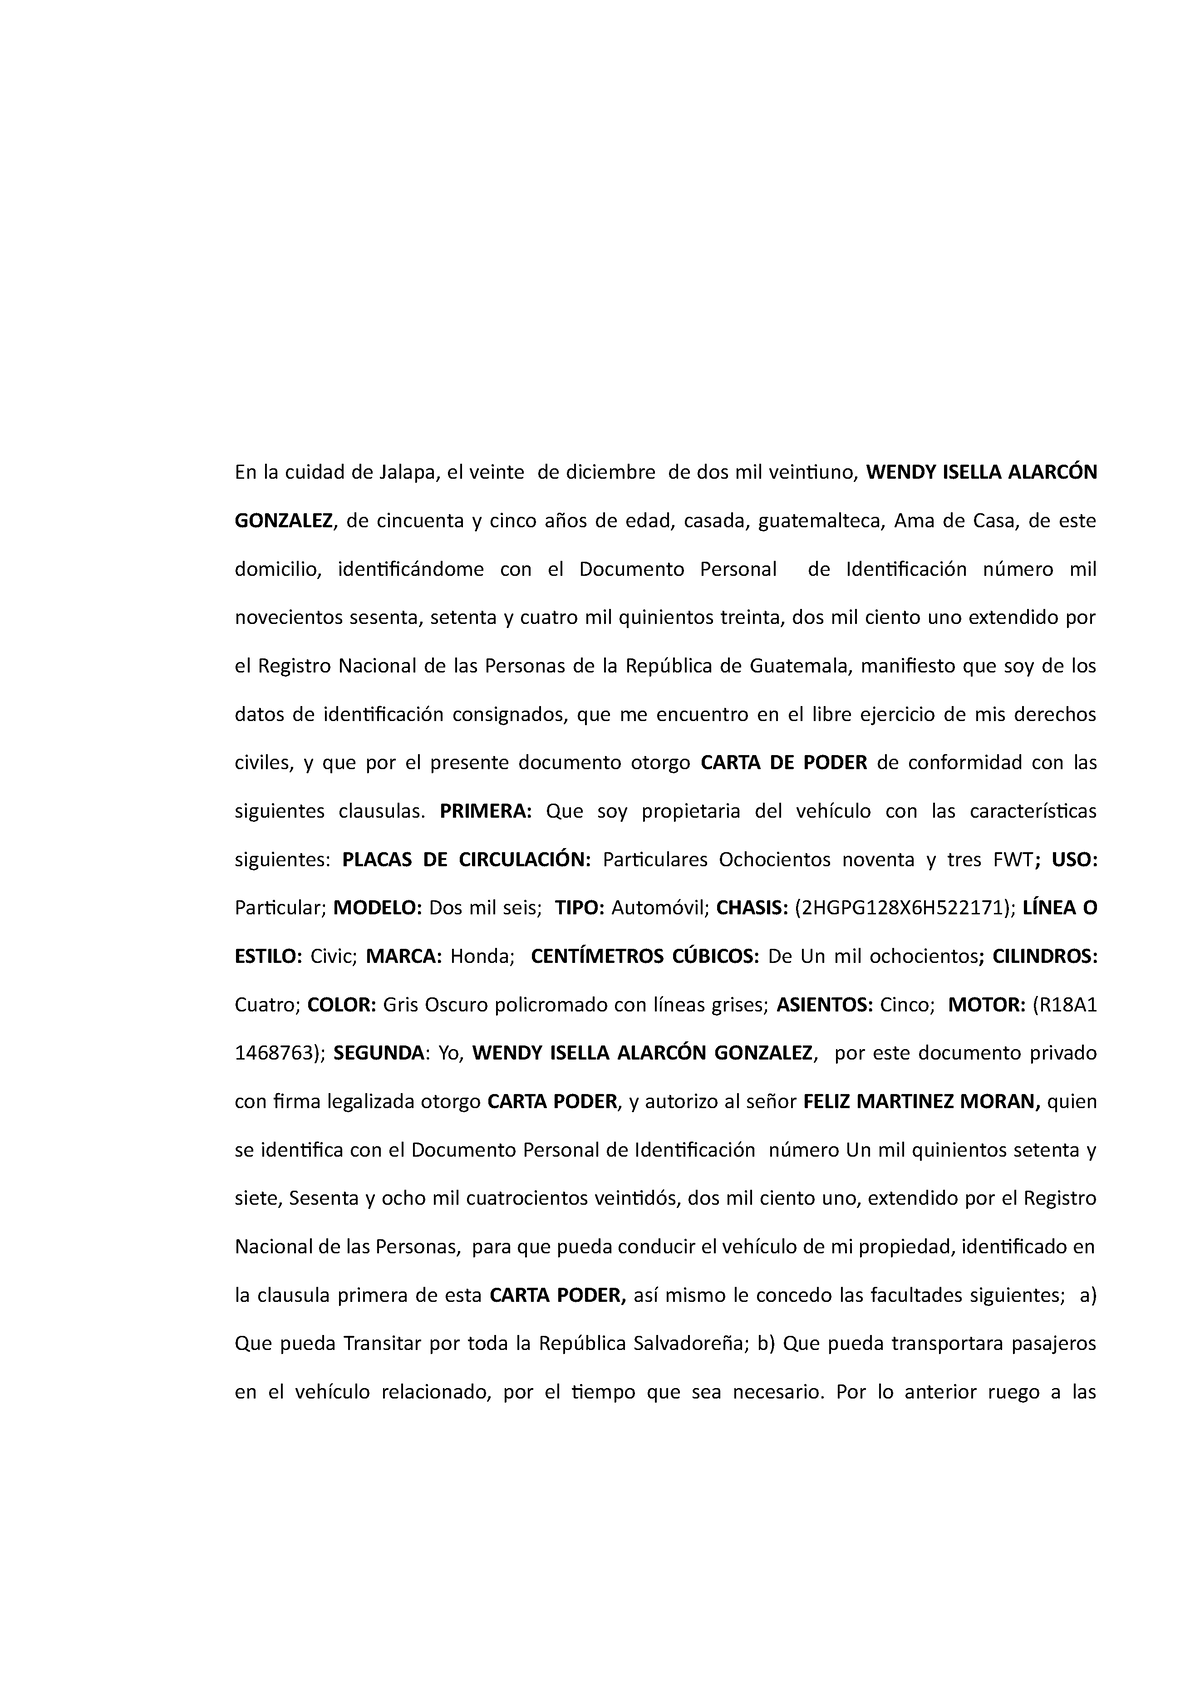 Carta Poder Con Autorizacion Para Salir Del Pais Con Vehiculo A Nombre De Otra Persona En La 7679